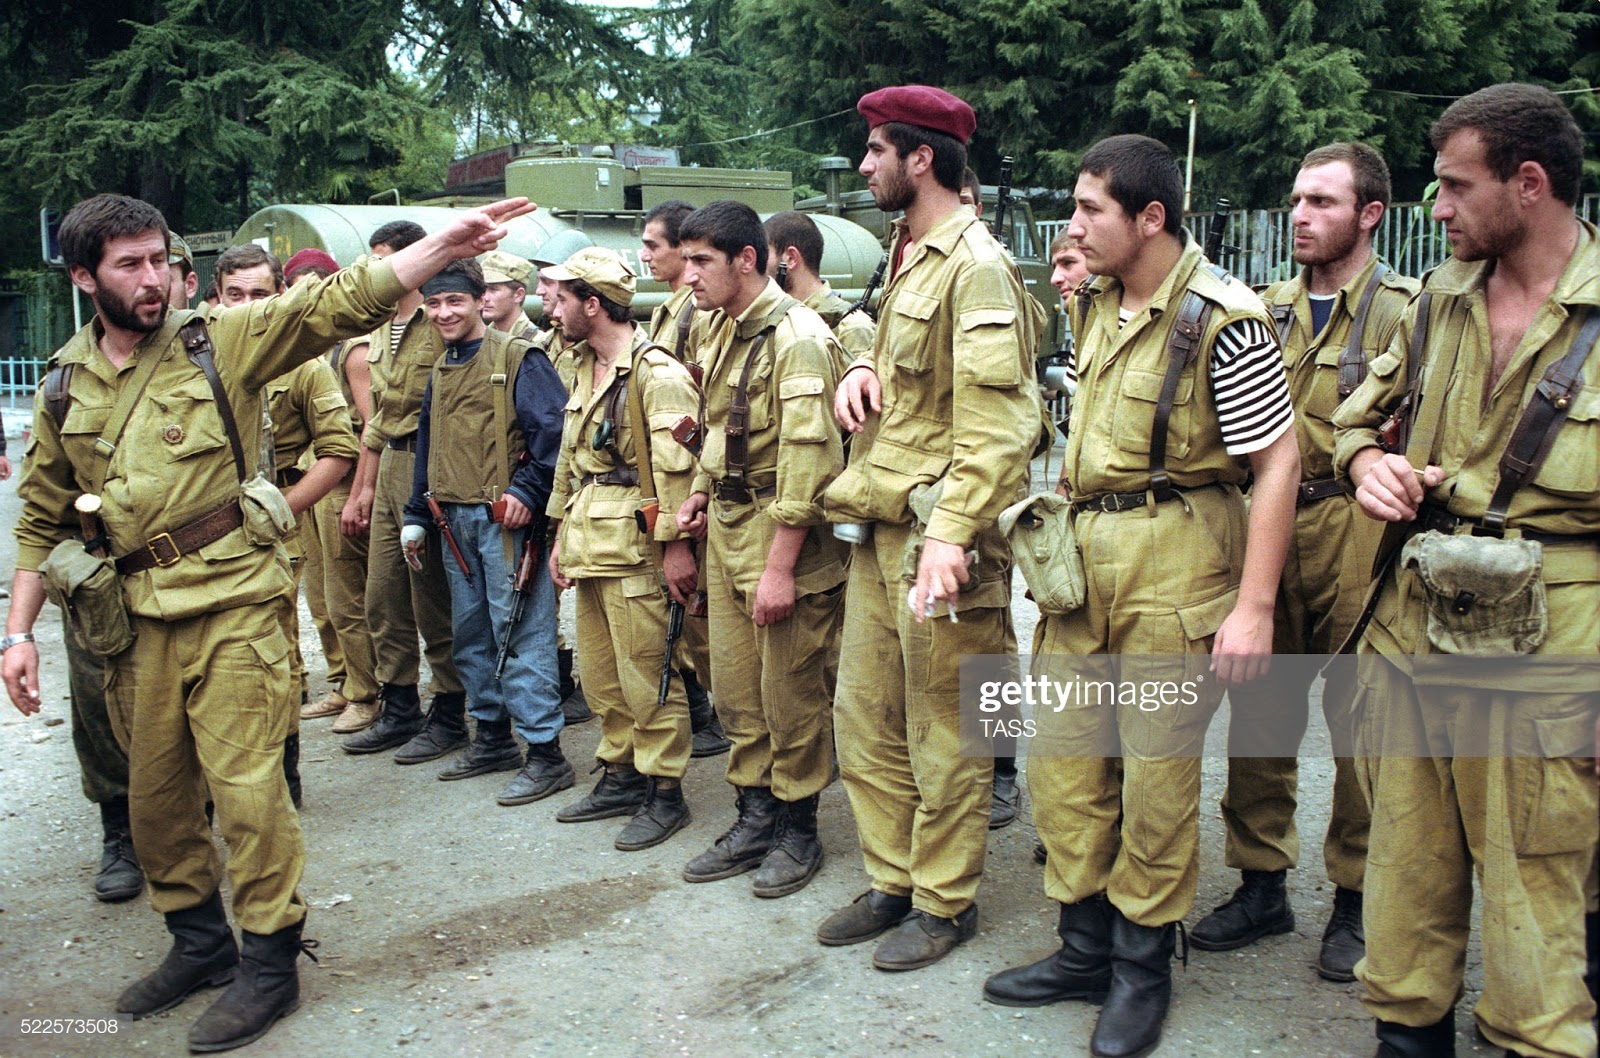 Абхазский конфликт 1992. Грузинские солдаты 1992 в Абхазии. Военный конфликт в Абхазии 1992-1993.